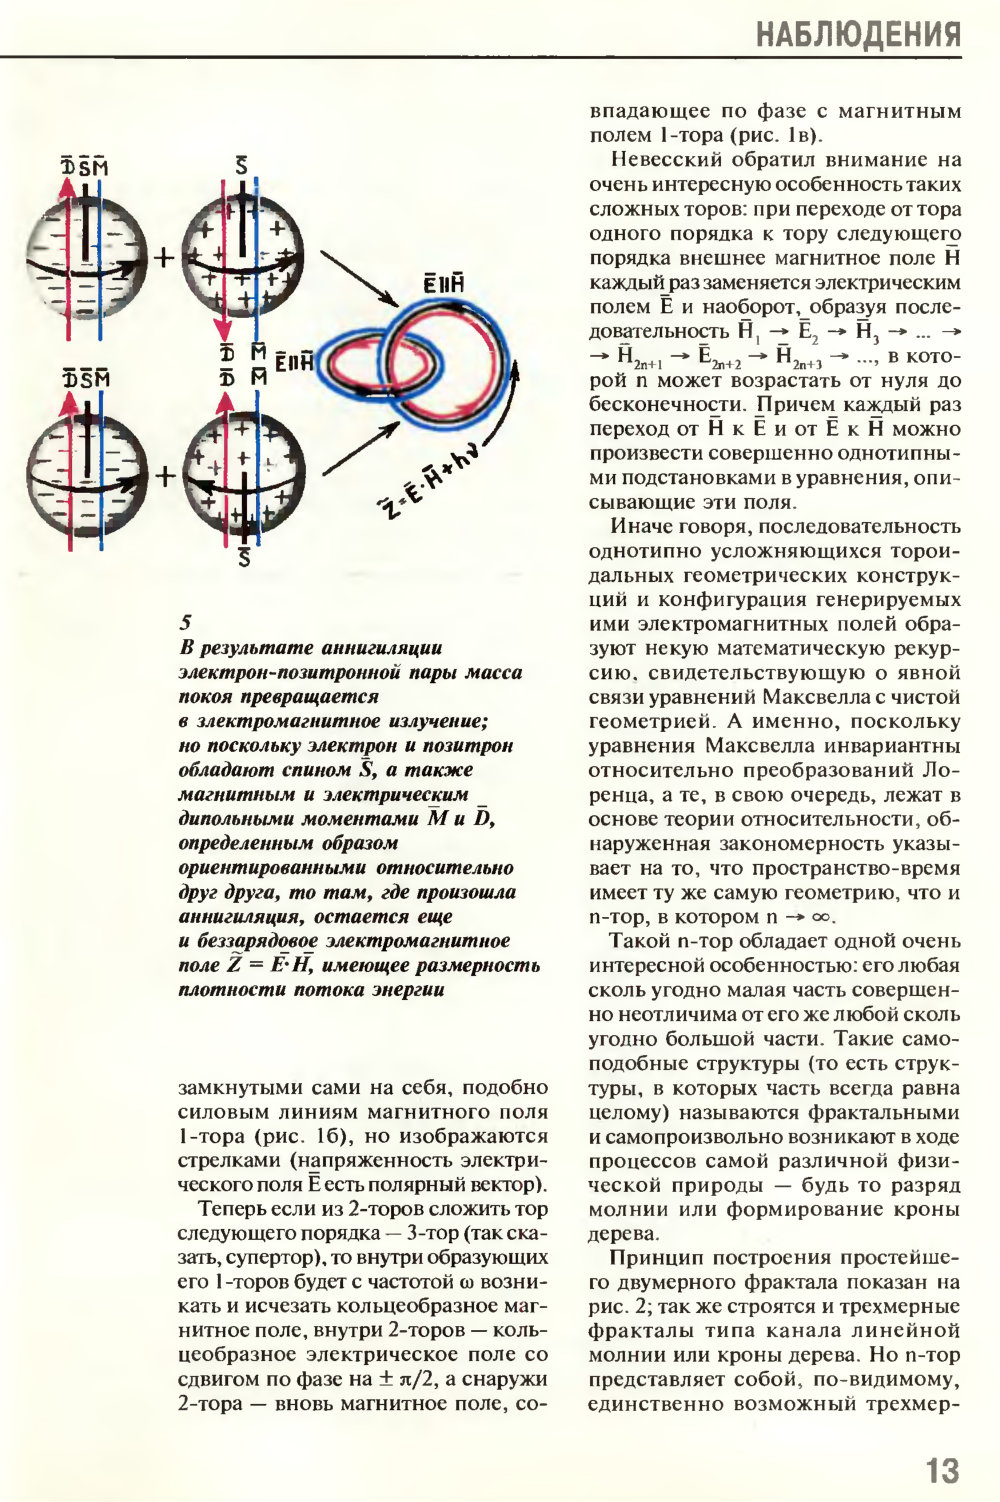 Игра в бублики. В.Е. Жвирблис. Химия и жизнь, 1995, №5, с.10-15. Фотокопия №4